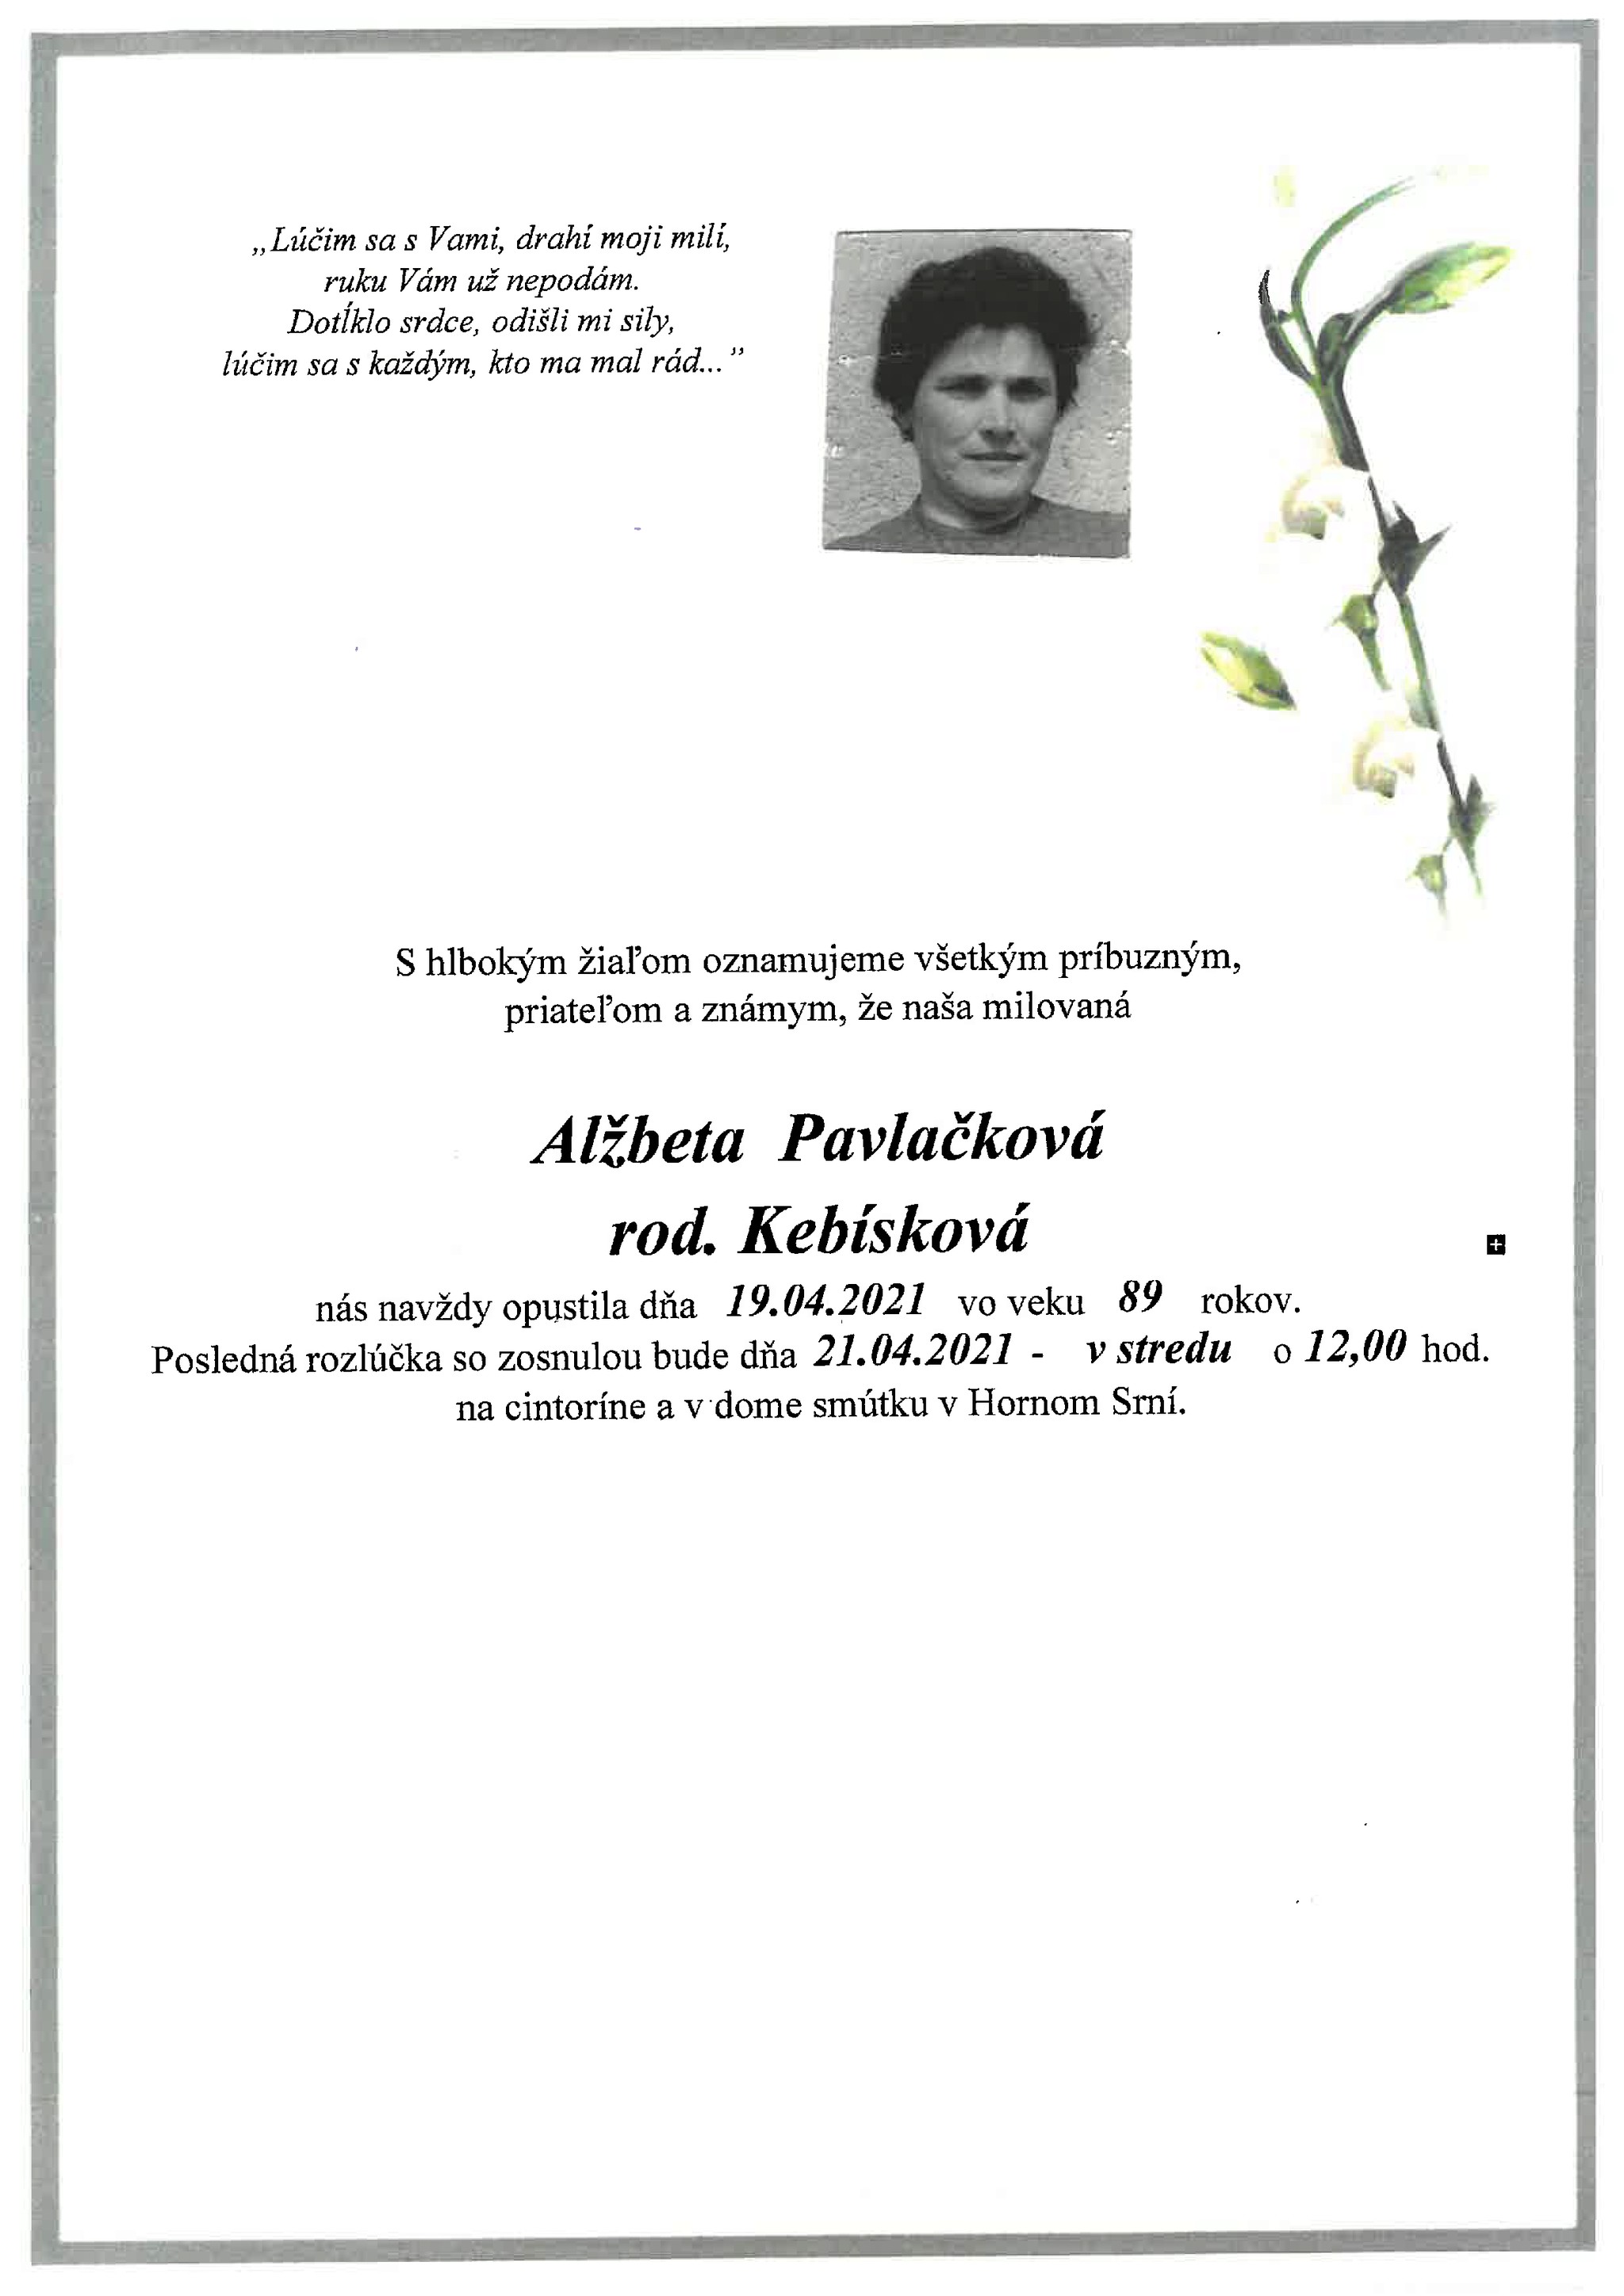 Alžbeta Pavlačková